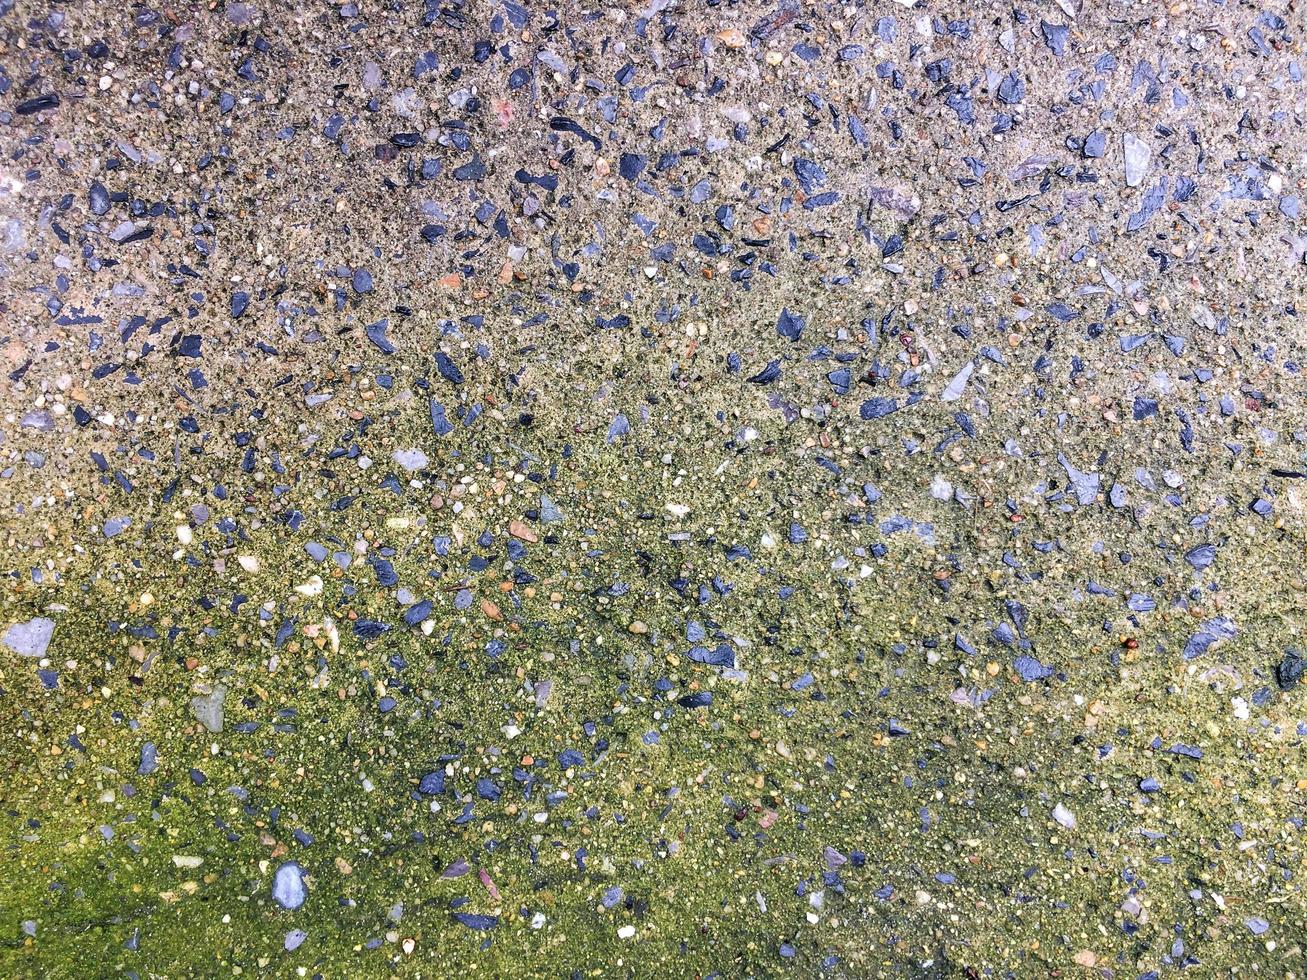 musgo verde brilhante crescendo em um concreto velho e desgastado de textura áspera, solo úmido de gotículas de água. foto